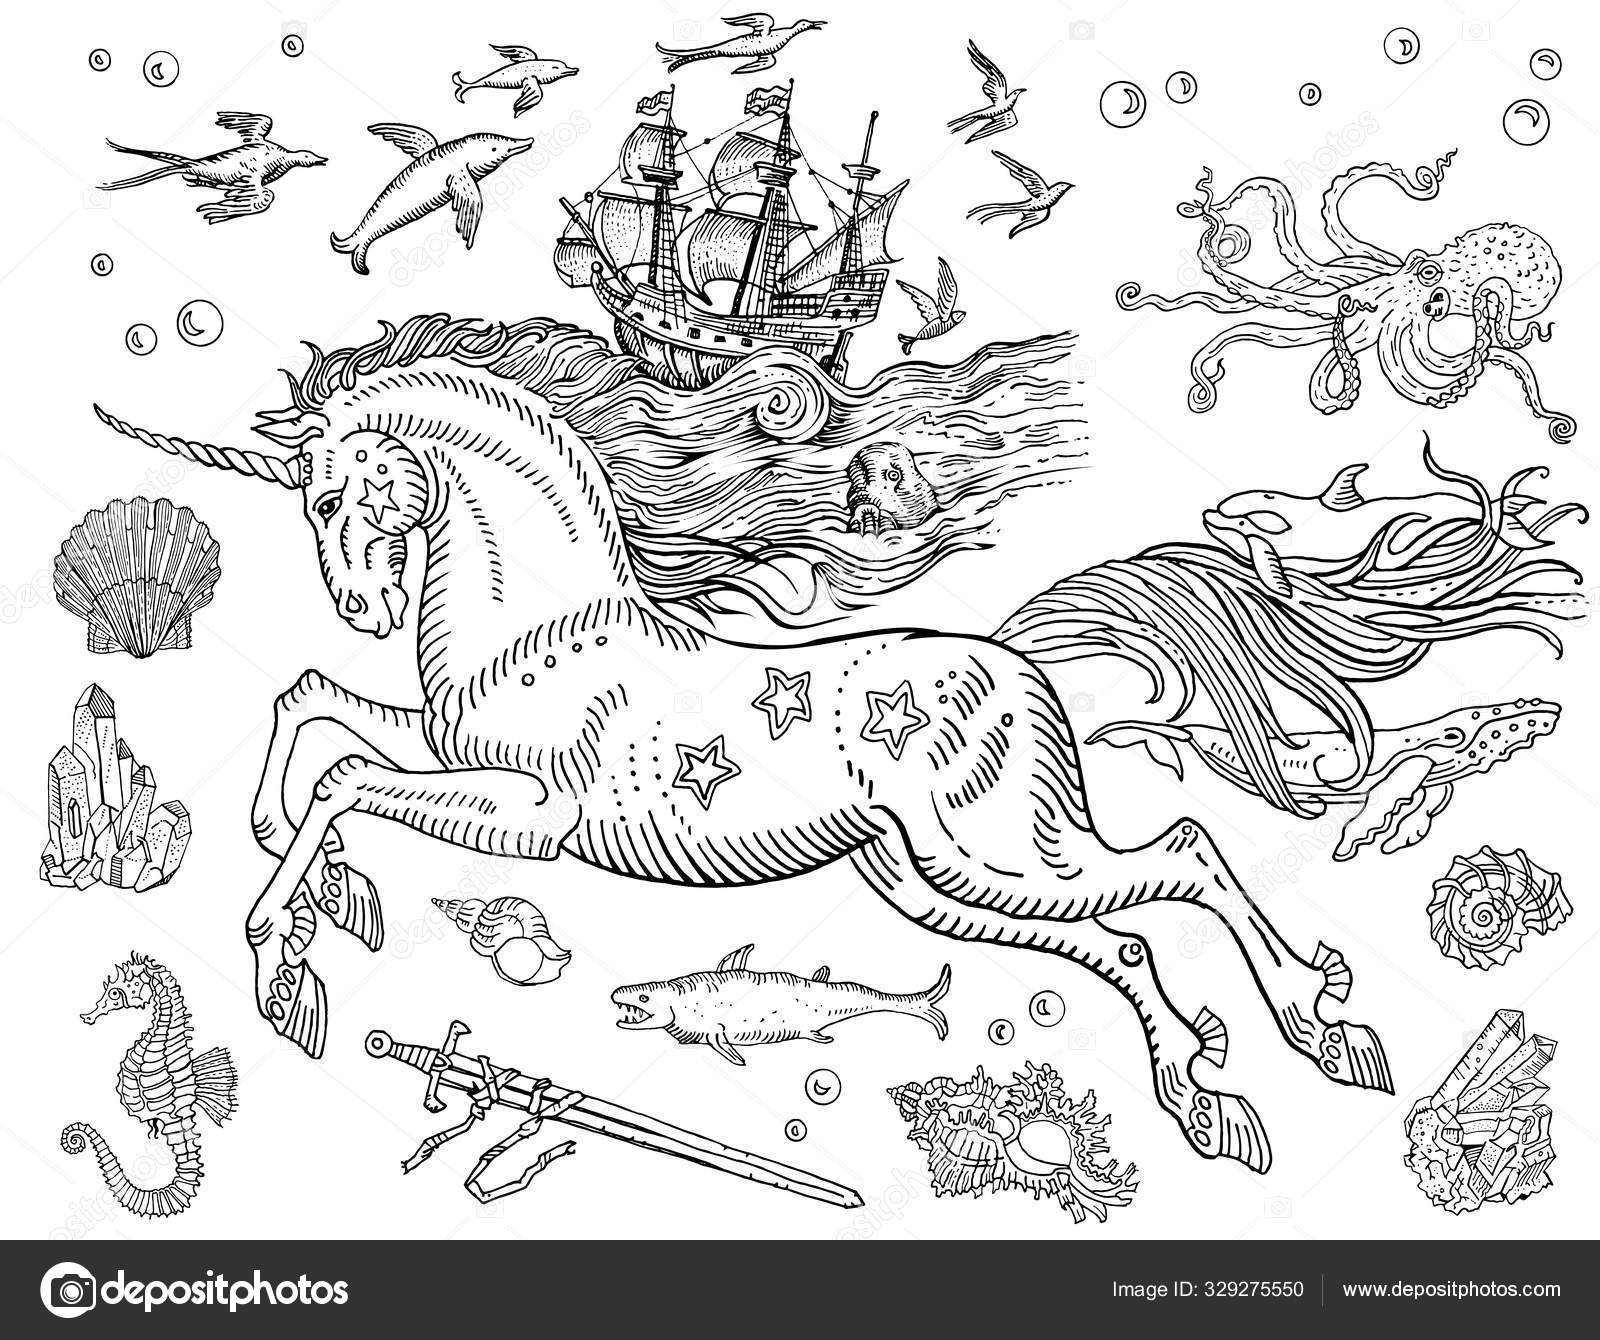 Como Desenhar um Cavalo Marinho com Canetas de Tinta Preta e Cinza